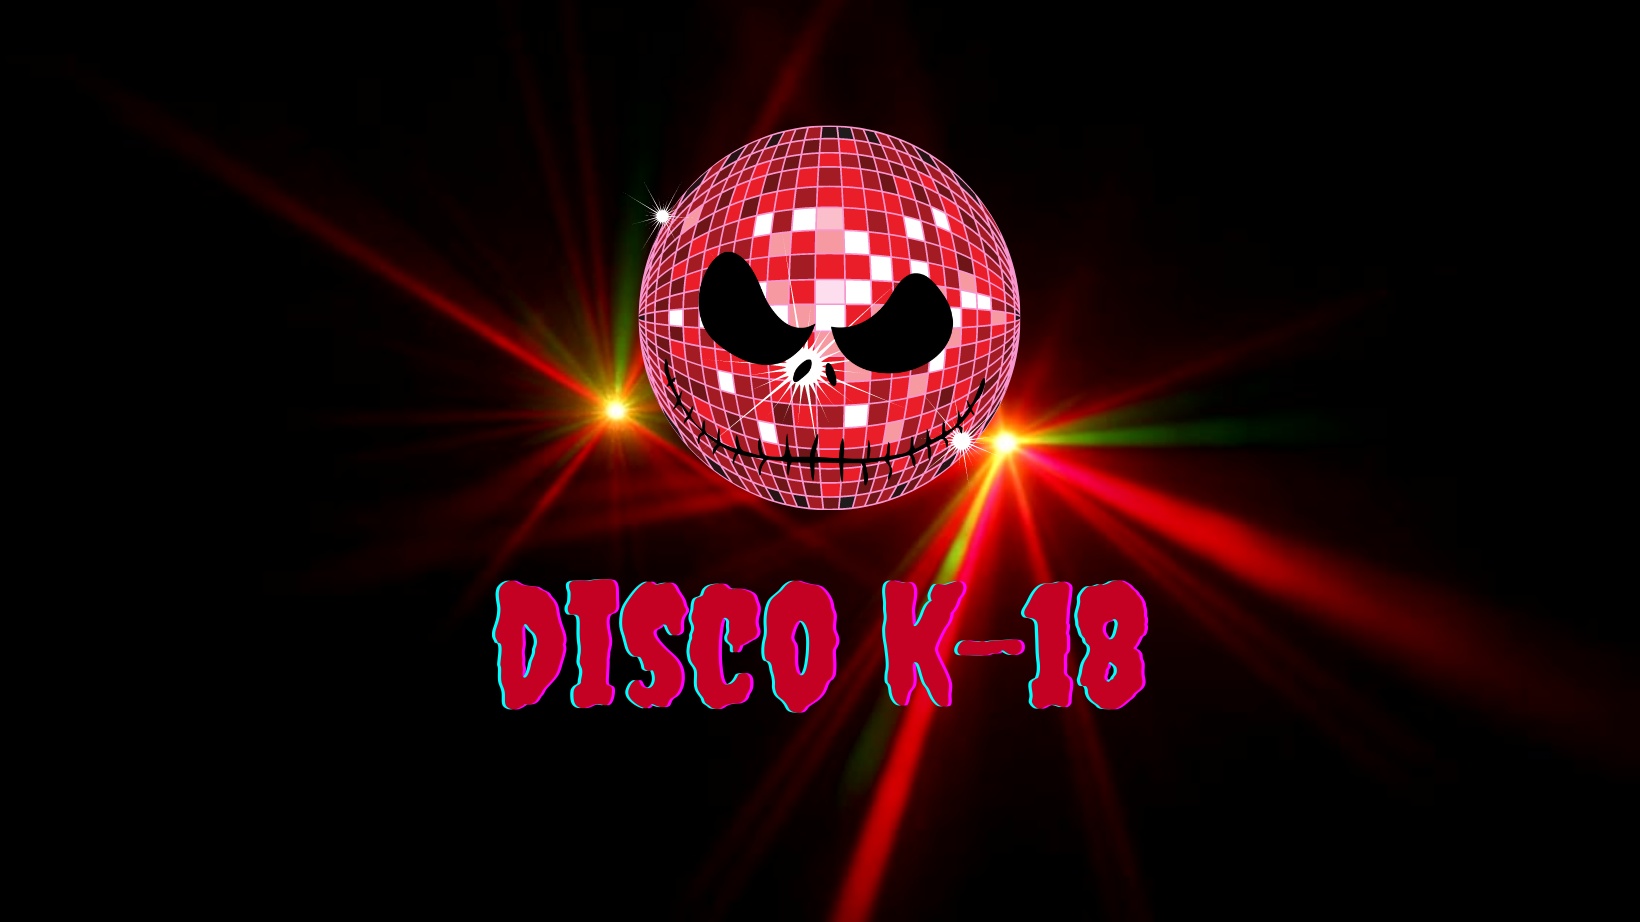 Disko K-18 For the Living Dead